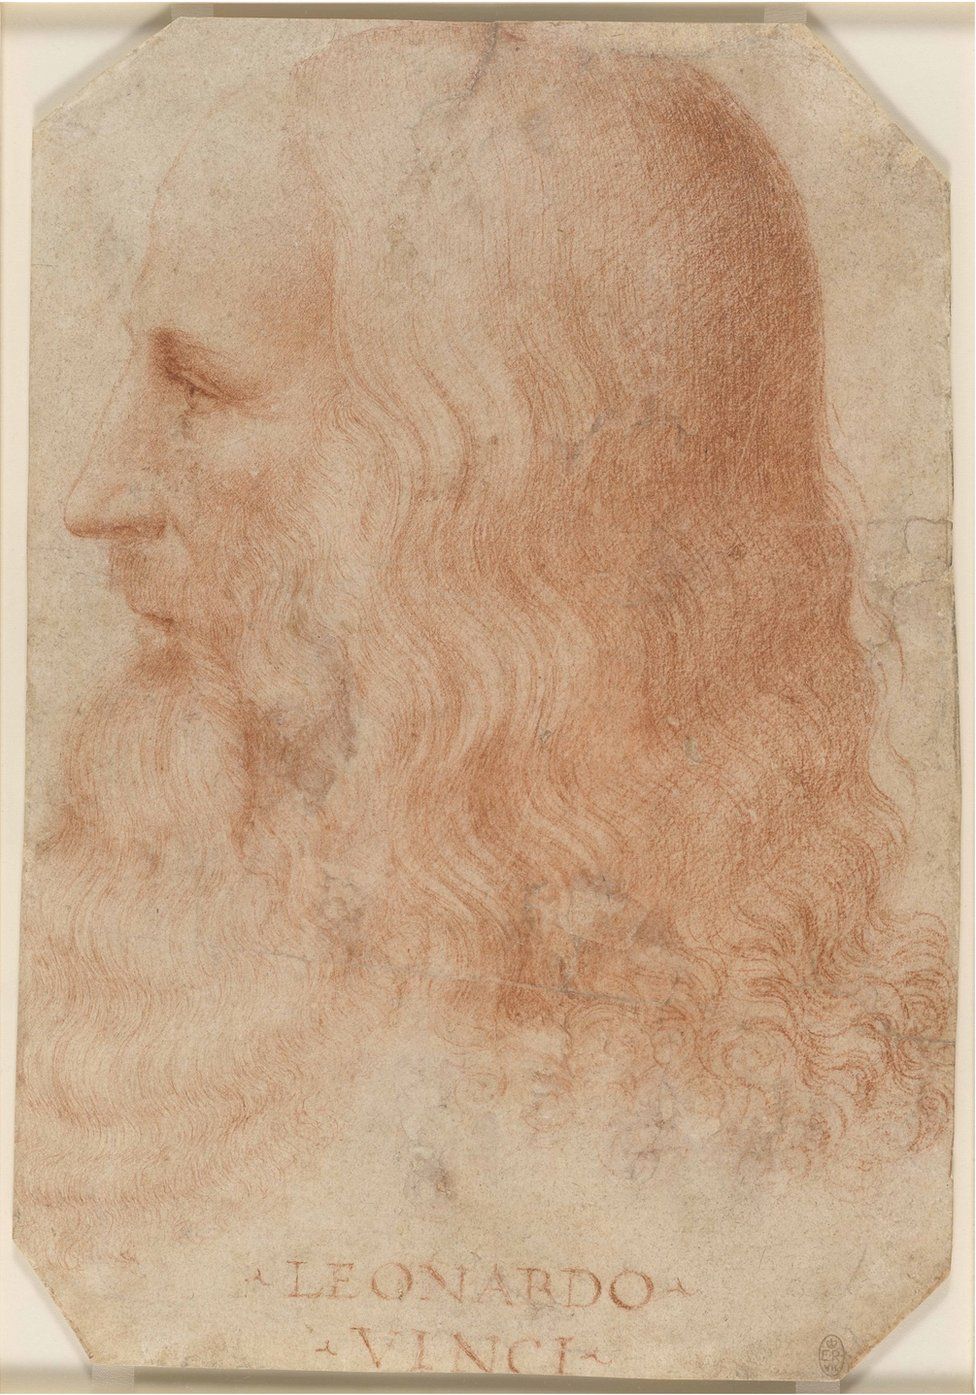 A portrait of Leonardo da Vinci by Francesco Melzi